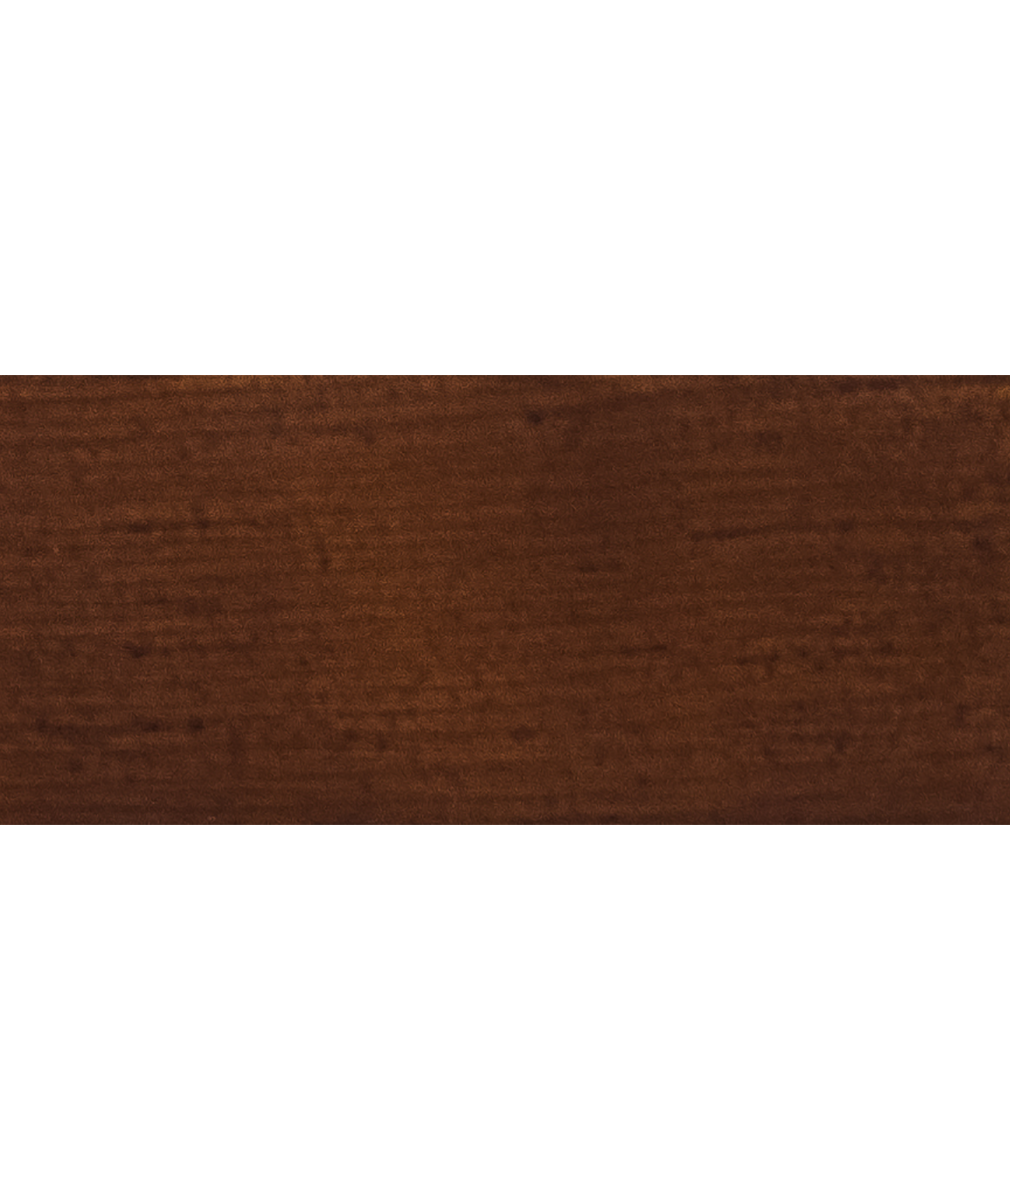 arborcoat semi transparent stain mahogany